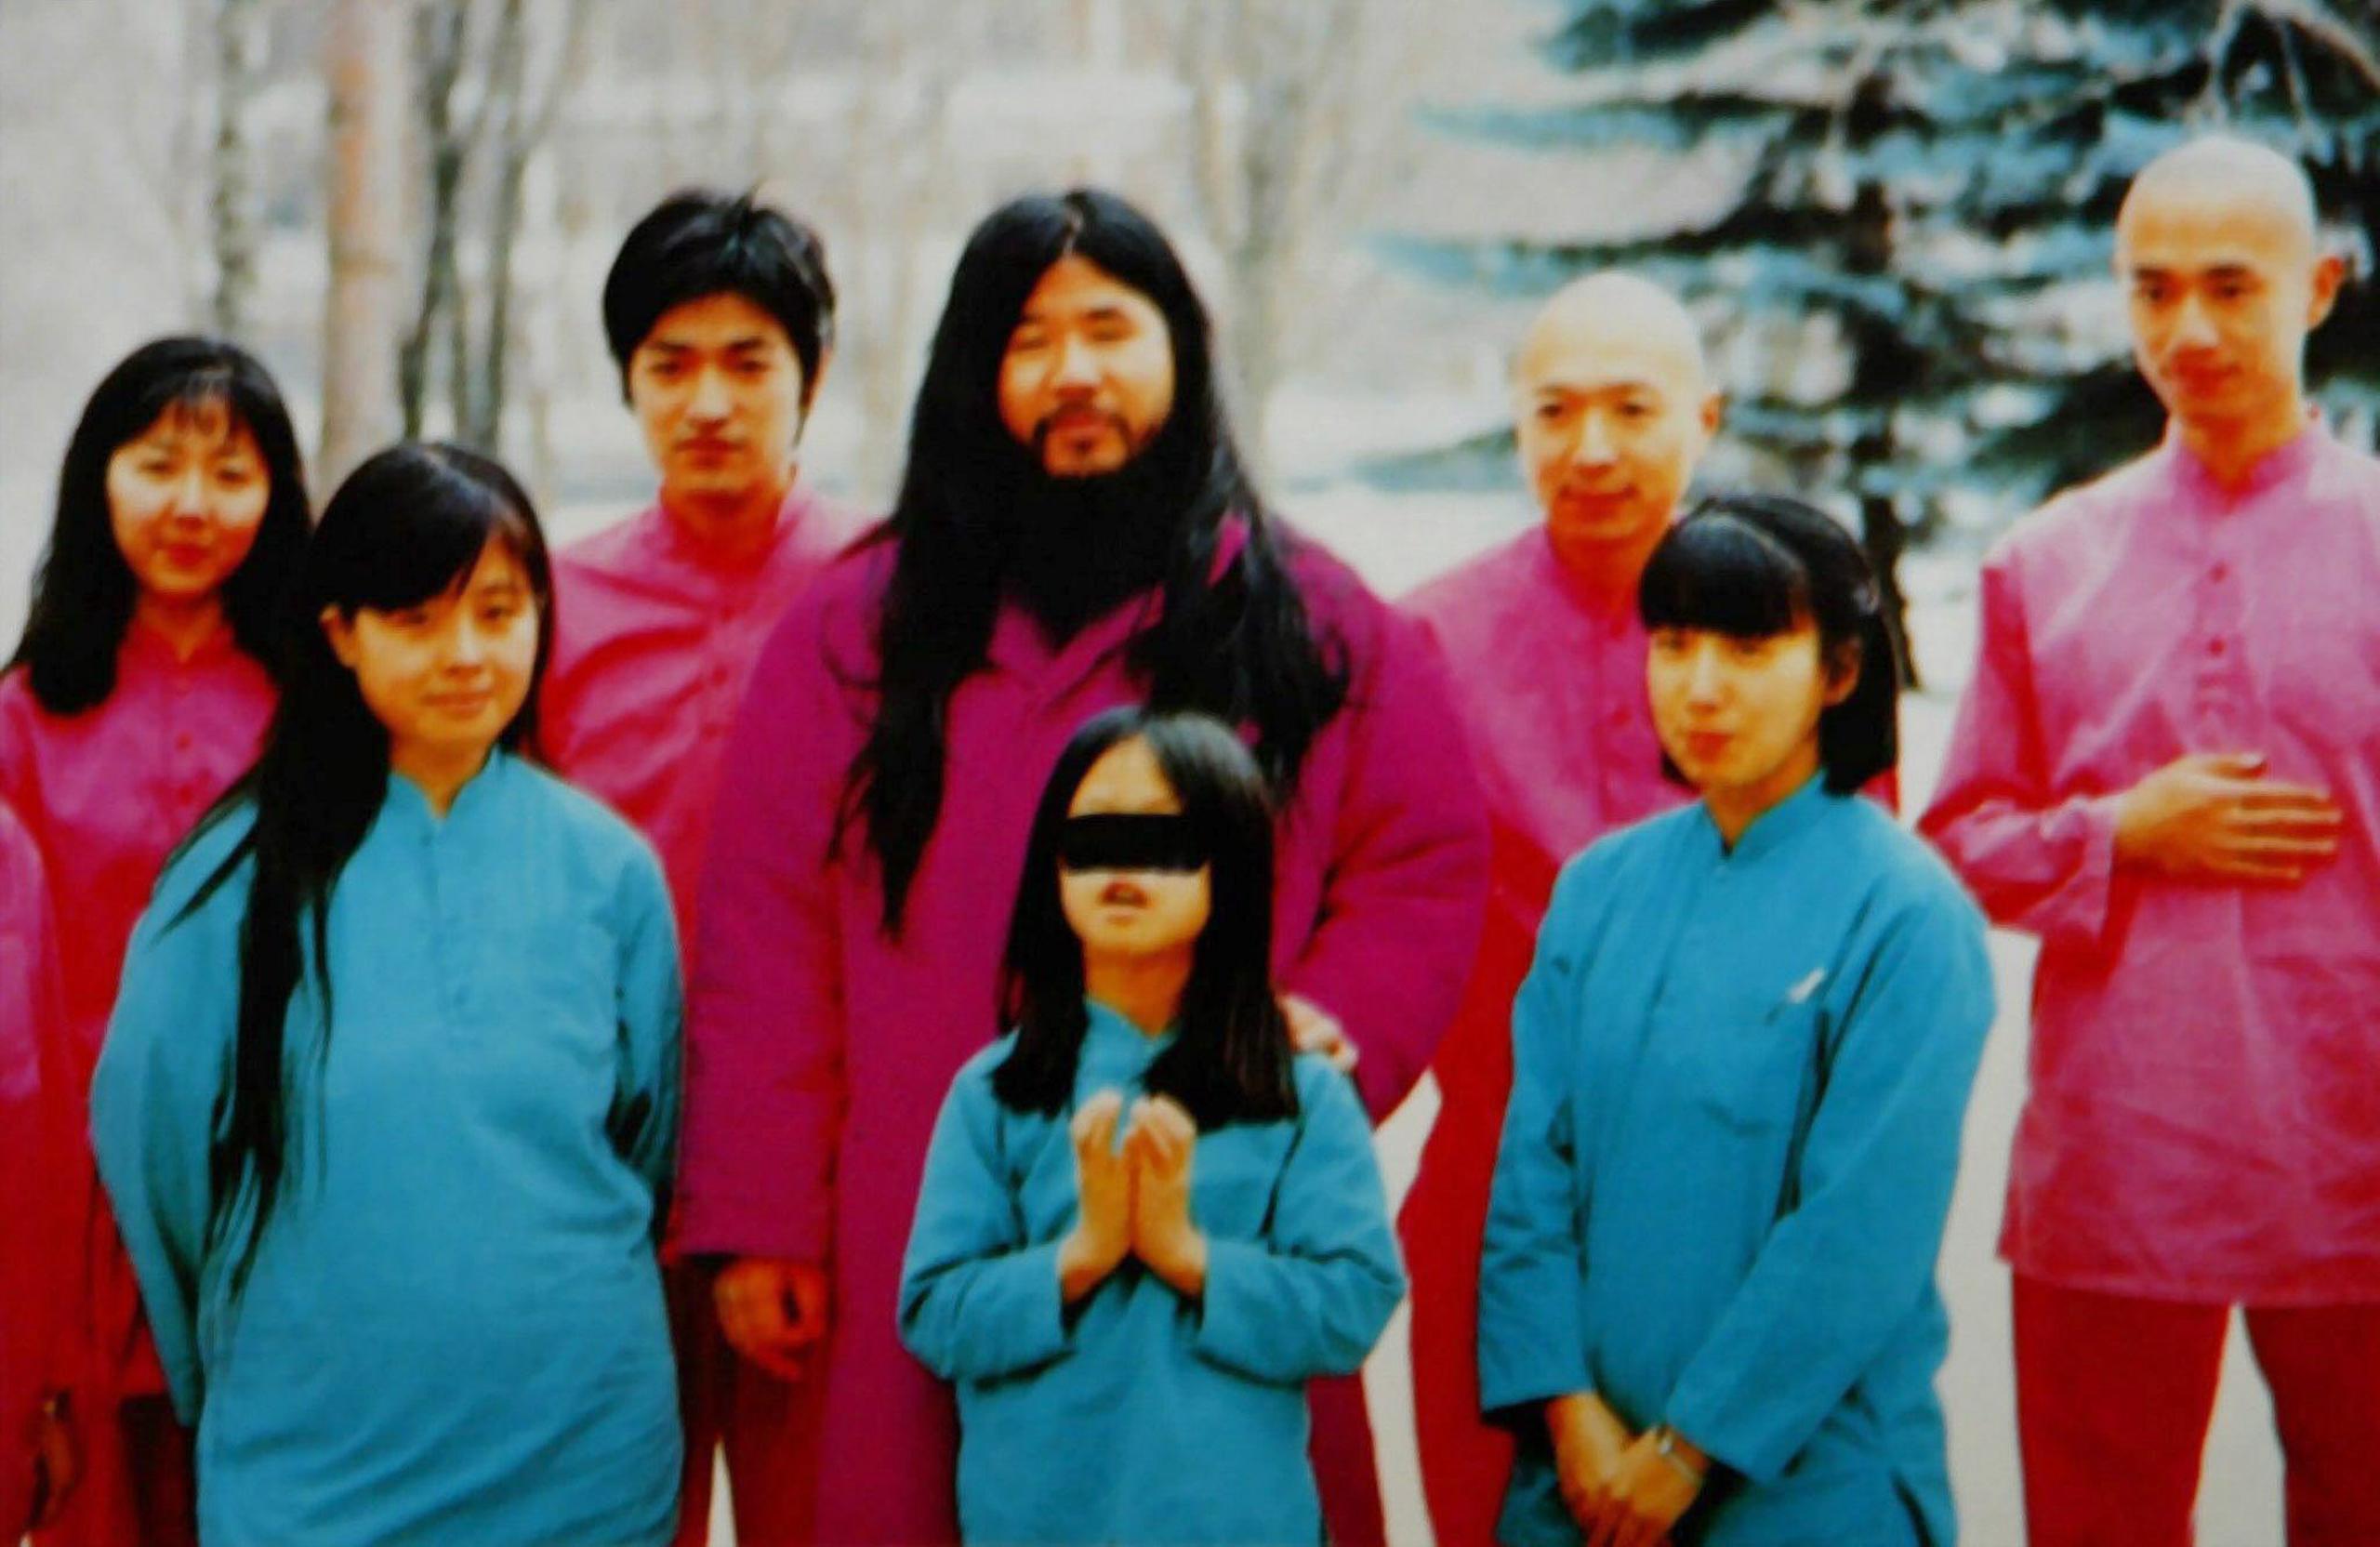 Una copia sin fecha de una foto perteneciente al miembro de culto de Aum que muestra al líder de la secta Shoko Asahara con su esposa Tomoko -en azul a la izquierda- y su hija Archery -en azul al centro- junto con un grupo interno de discípulos. (EPA / HO / EFE)